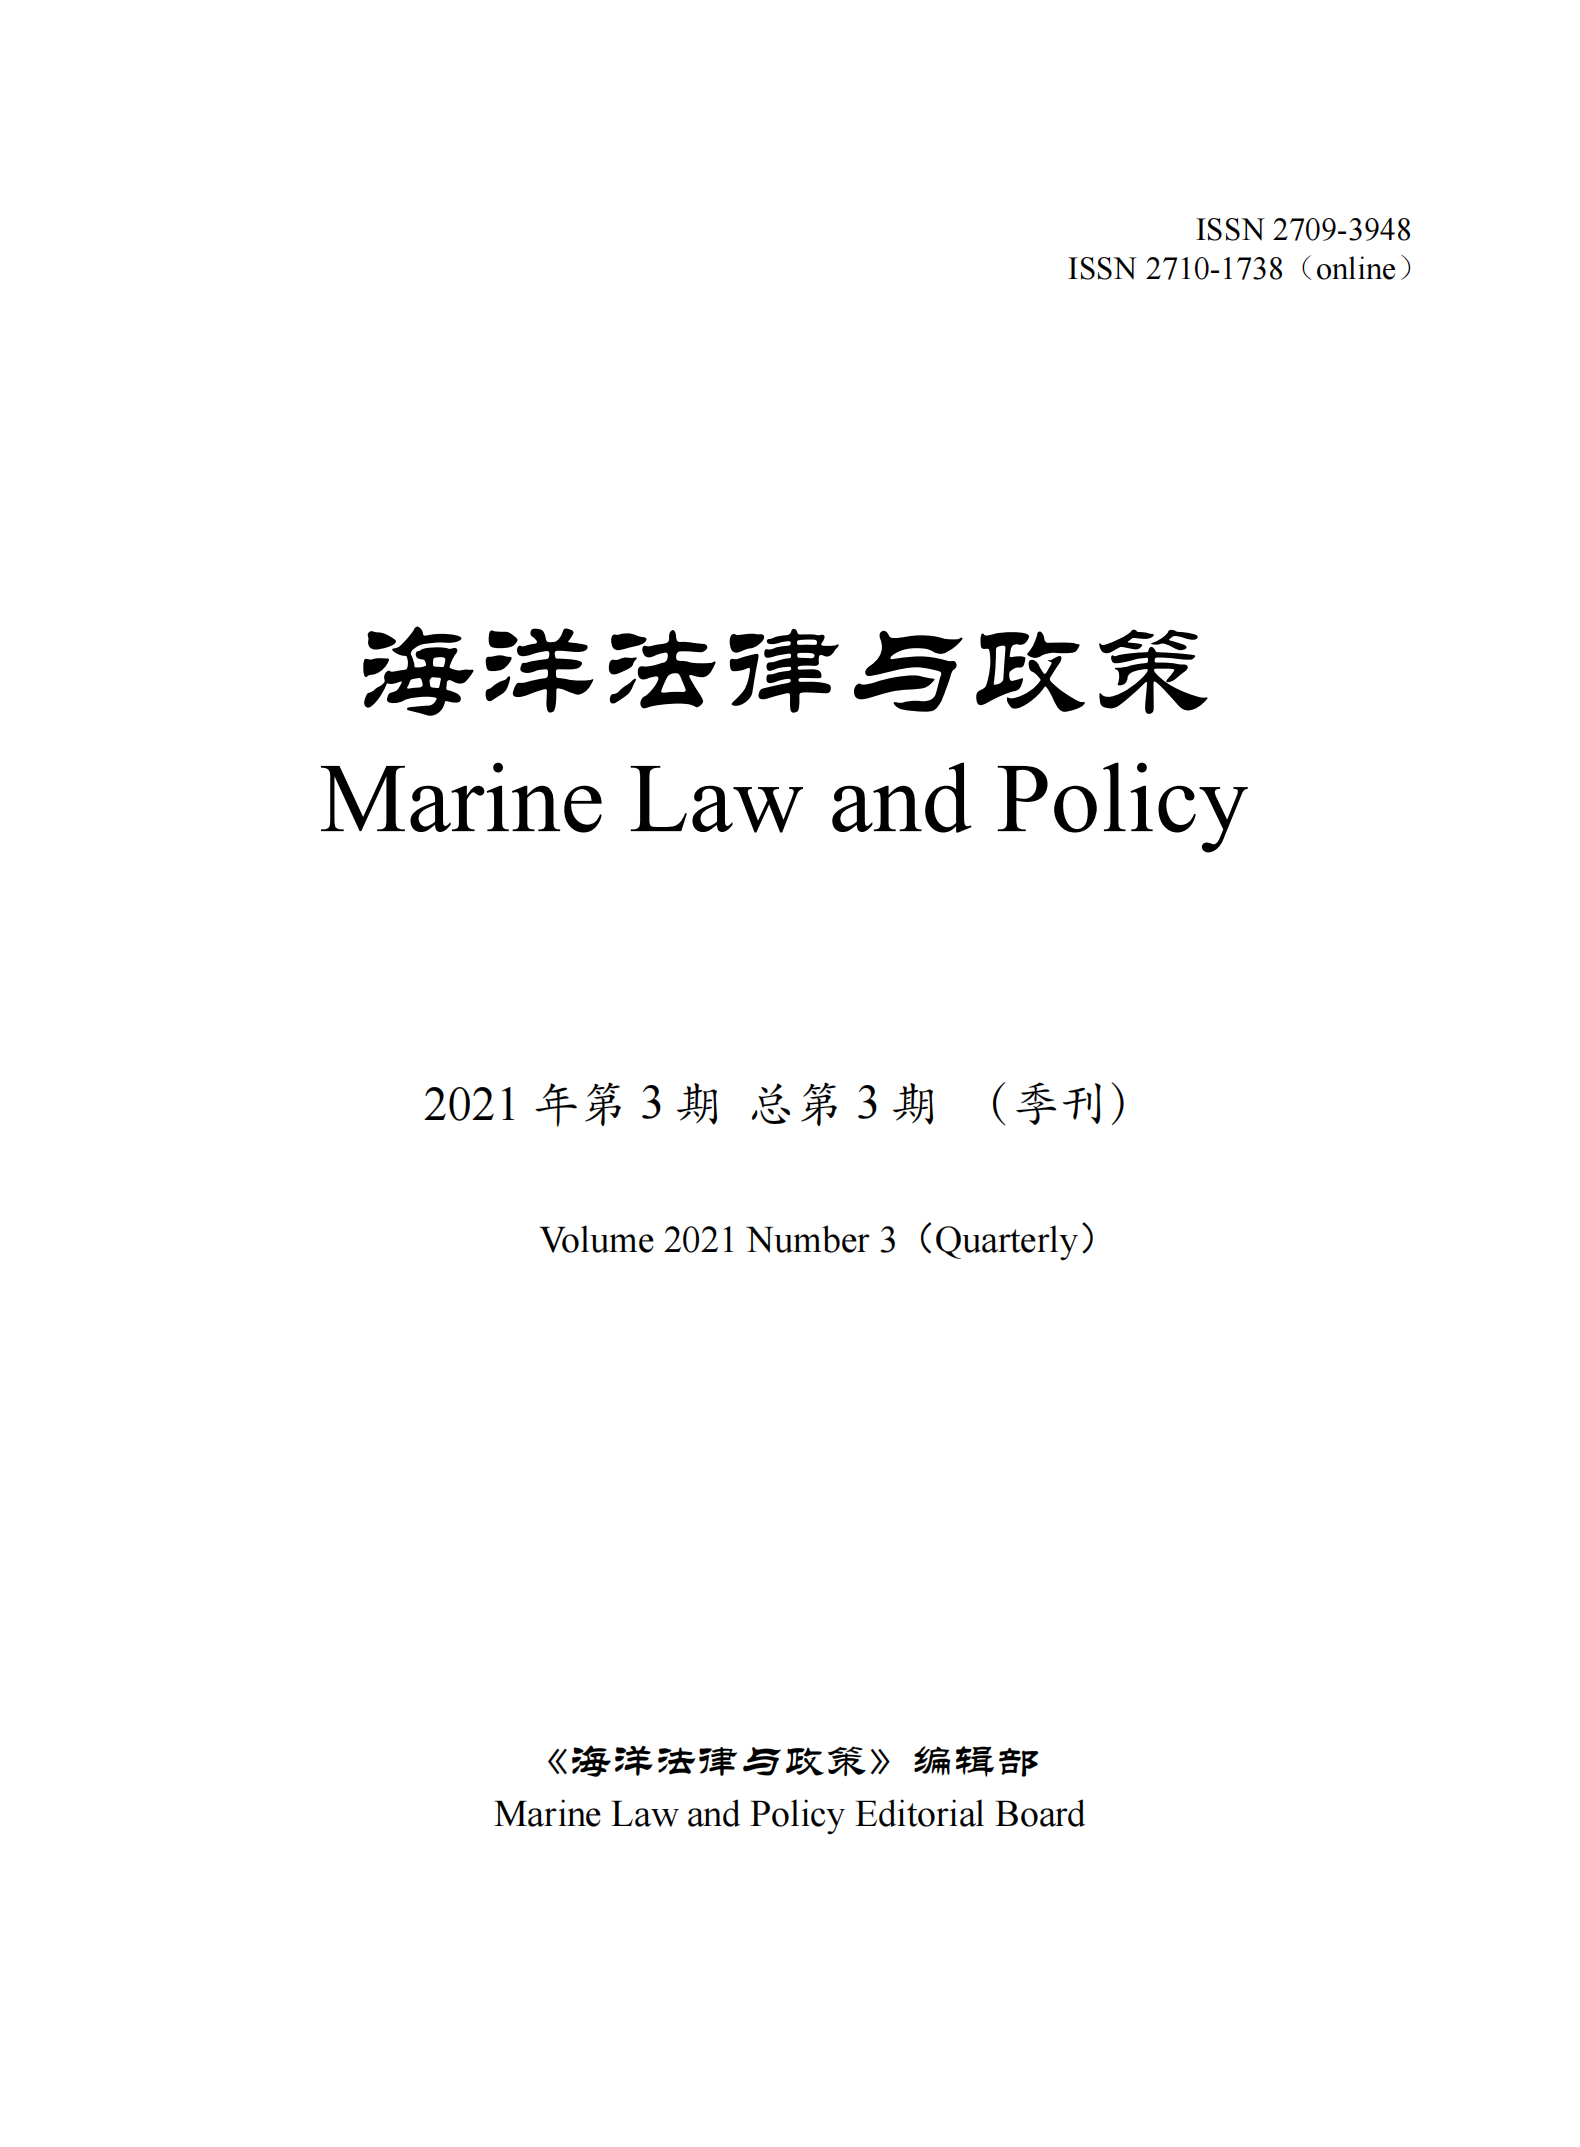 提取自《海洋法律与政策》总第3期.png